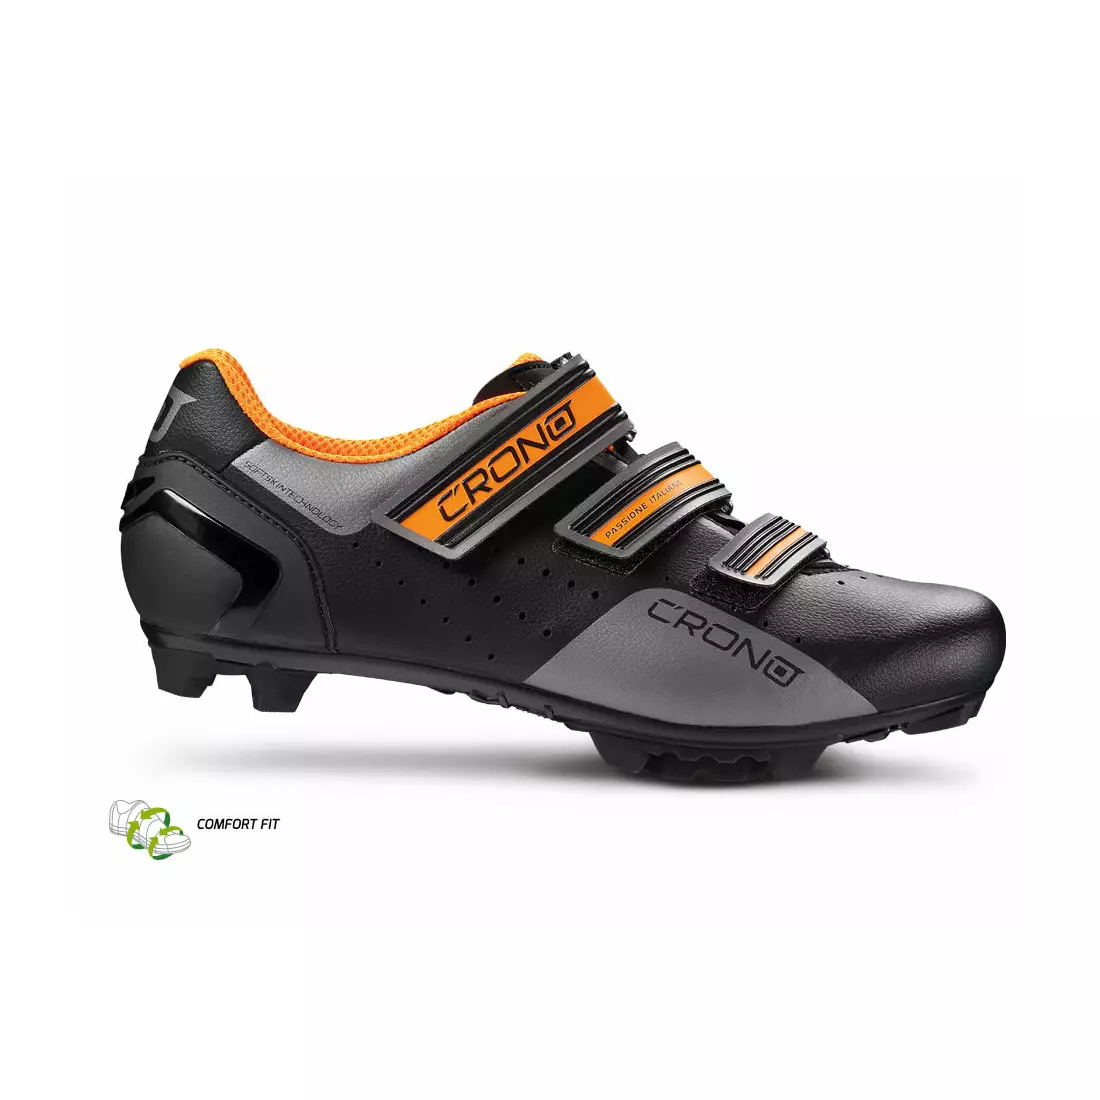 CRONO CX-4 NYLON cyklistická obuv MTB černá a oranžová